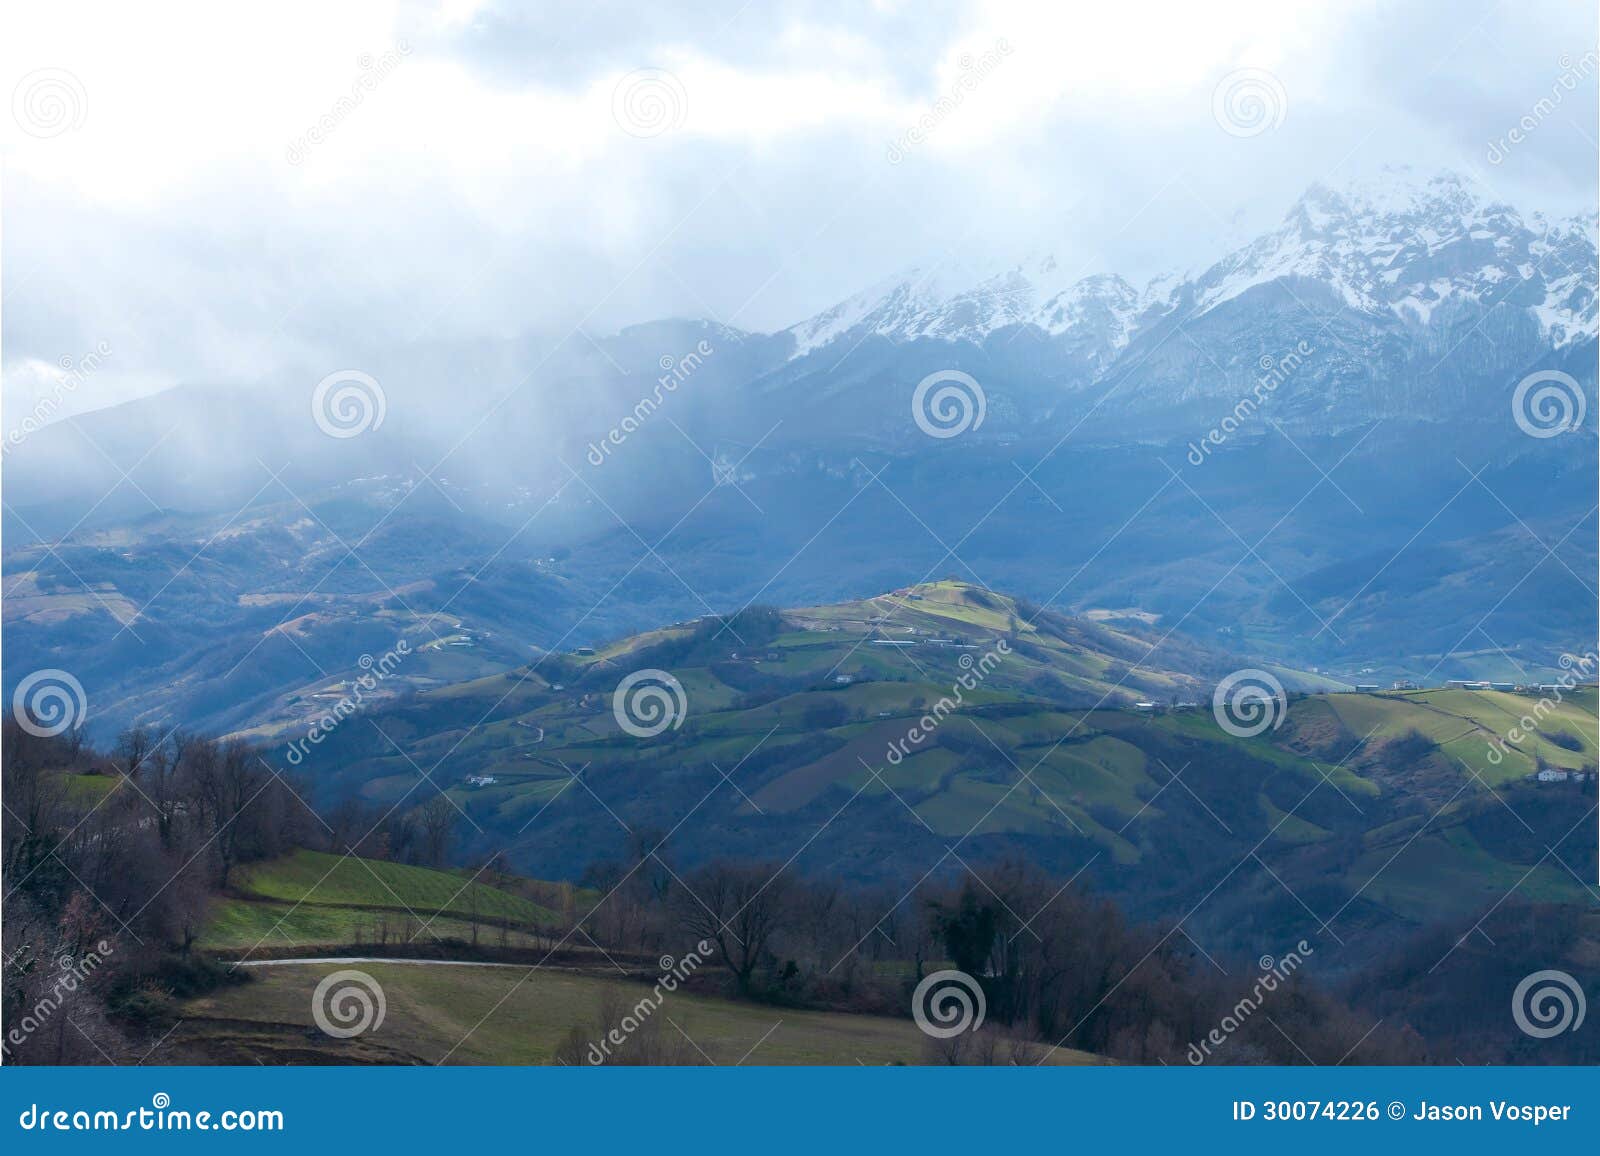 hills in abruzzo